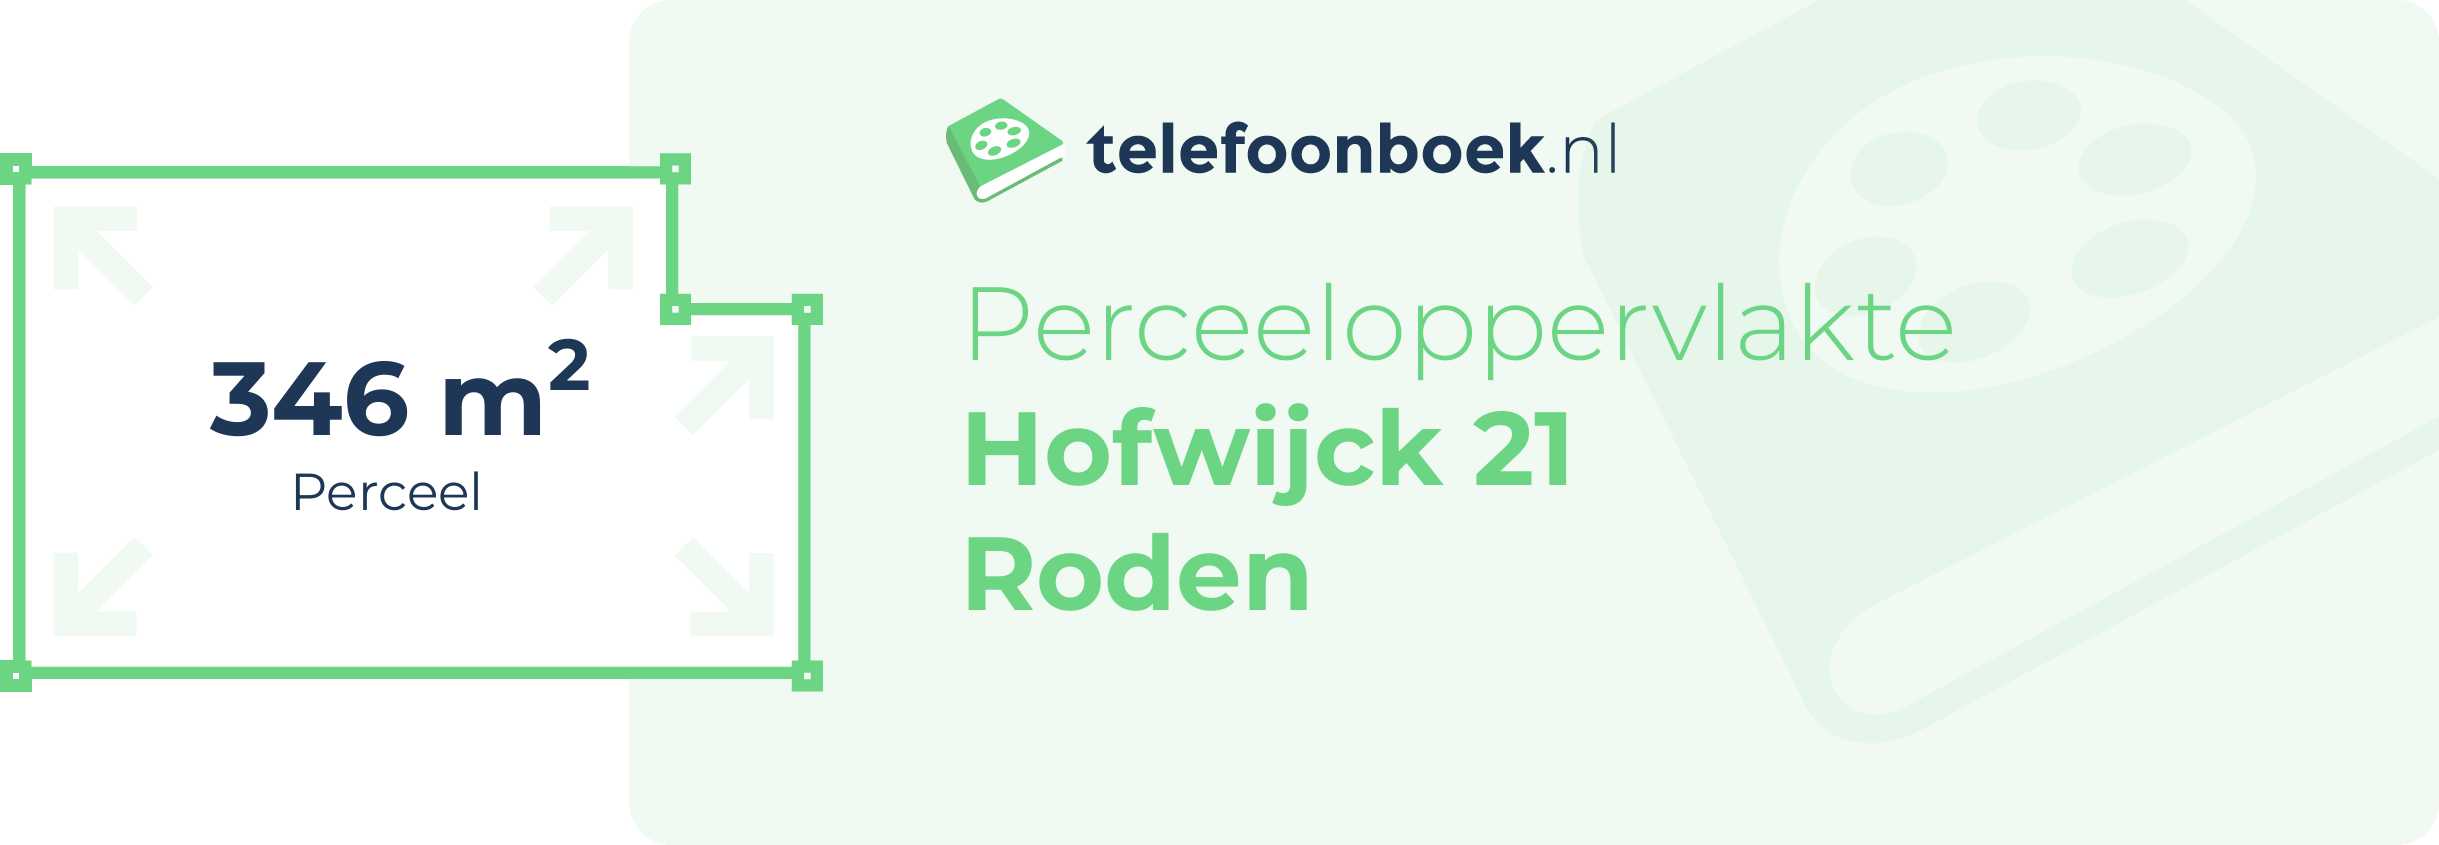 Perceeloppervlakte Hofwijck 21 Roden